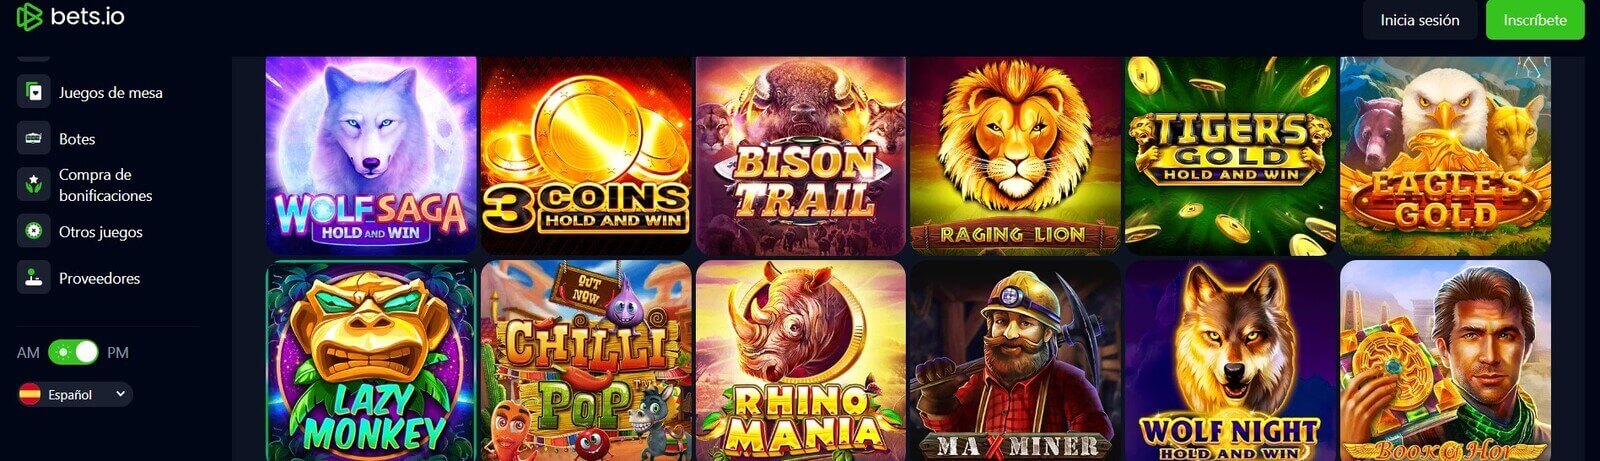 Jugar a las tragamonedas de Bets.io Casino online en Latinoamérica